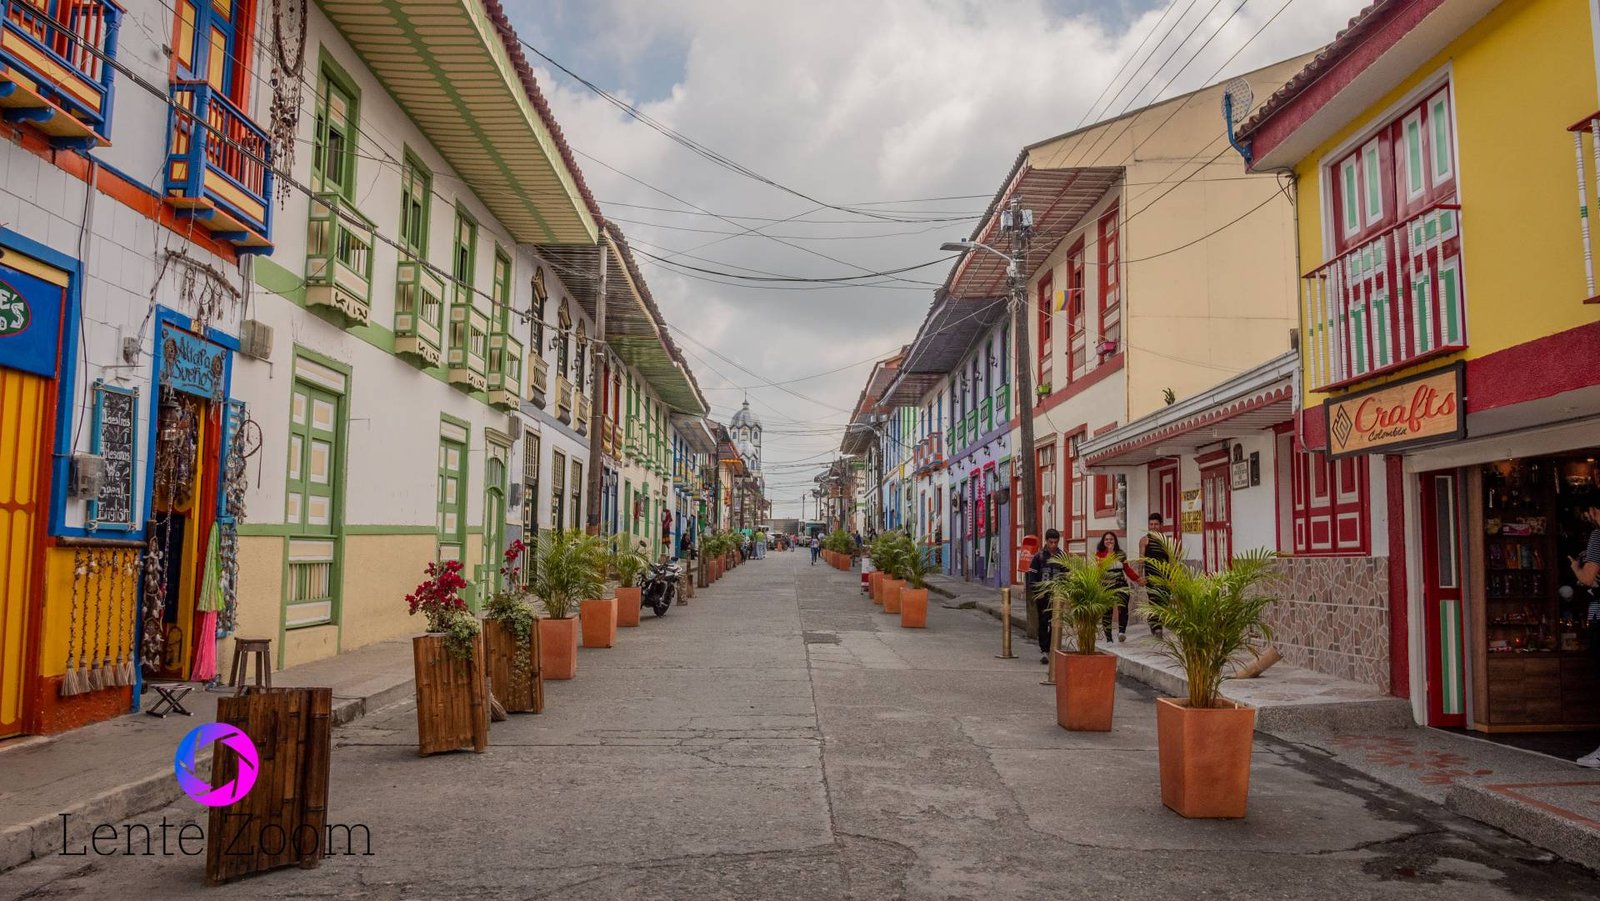 Calle decorada con plantas en macetas un poco grandes y llena de casas típicas de diferentes colores